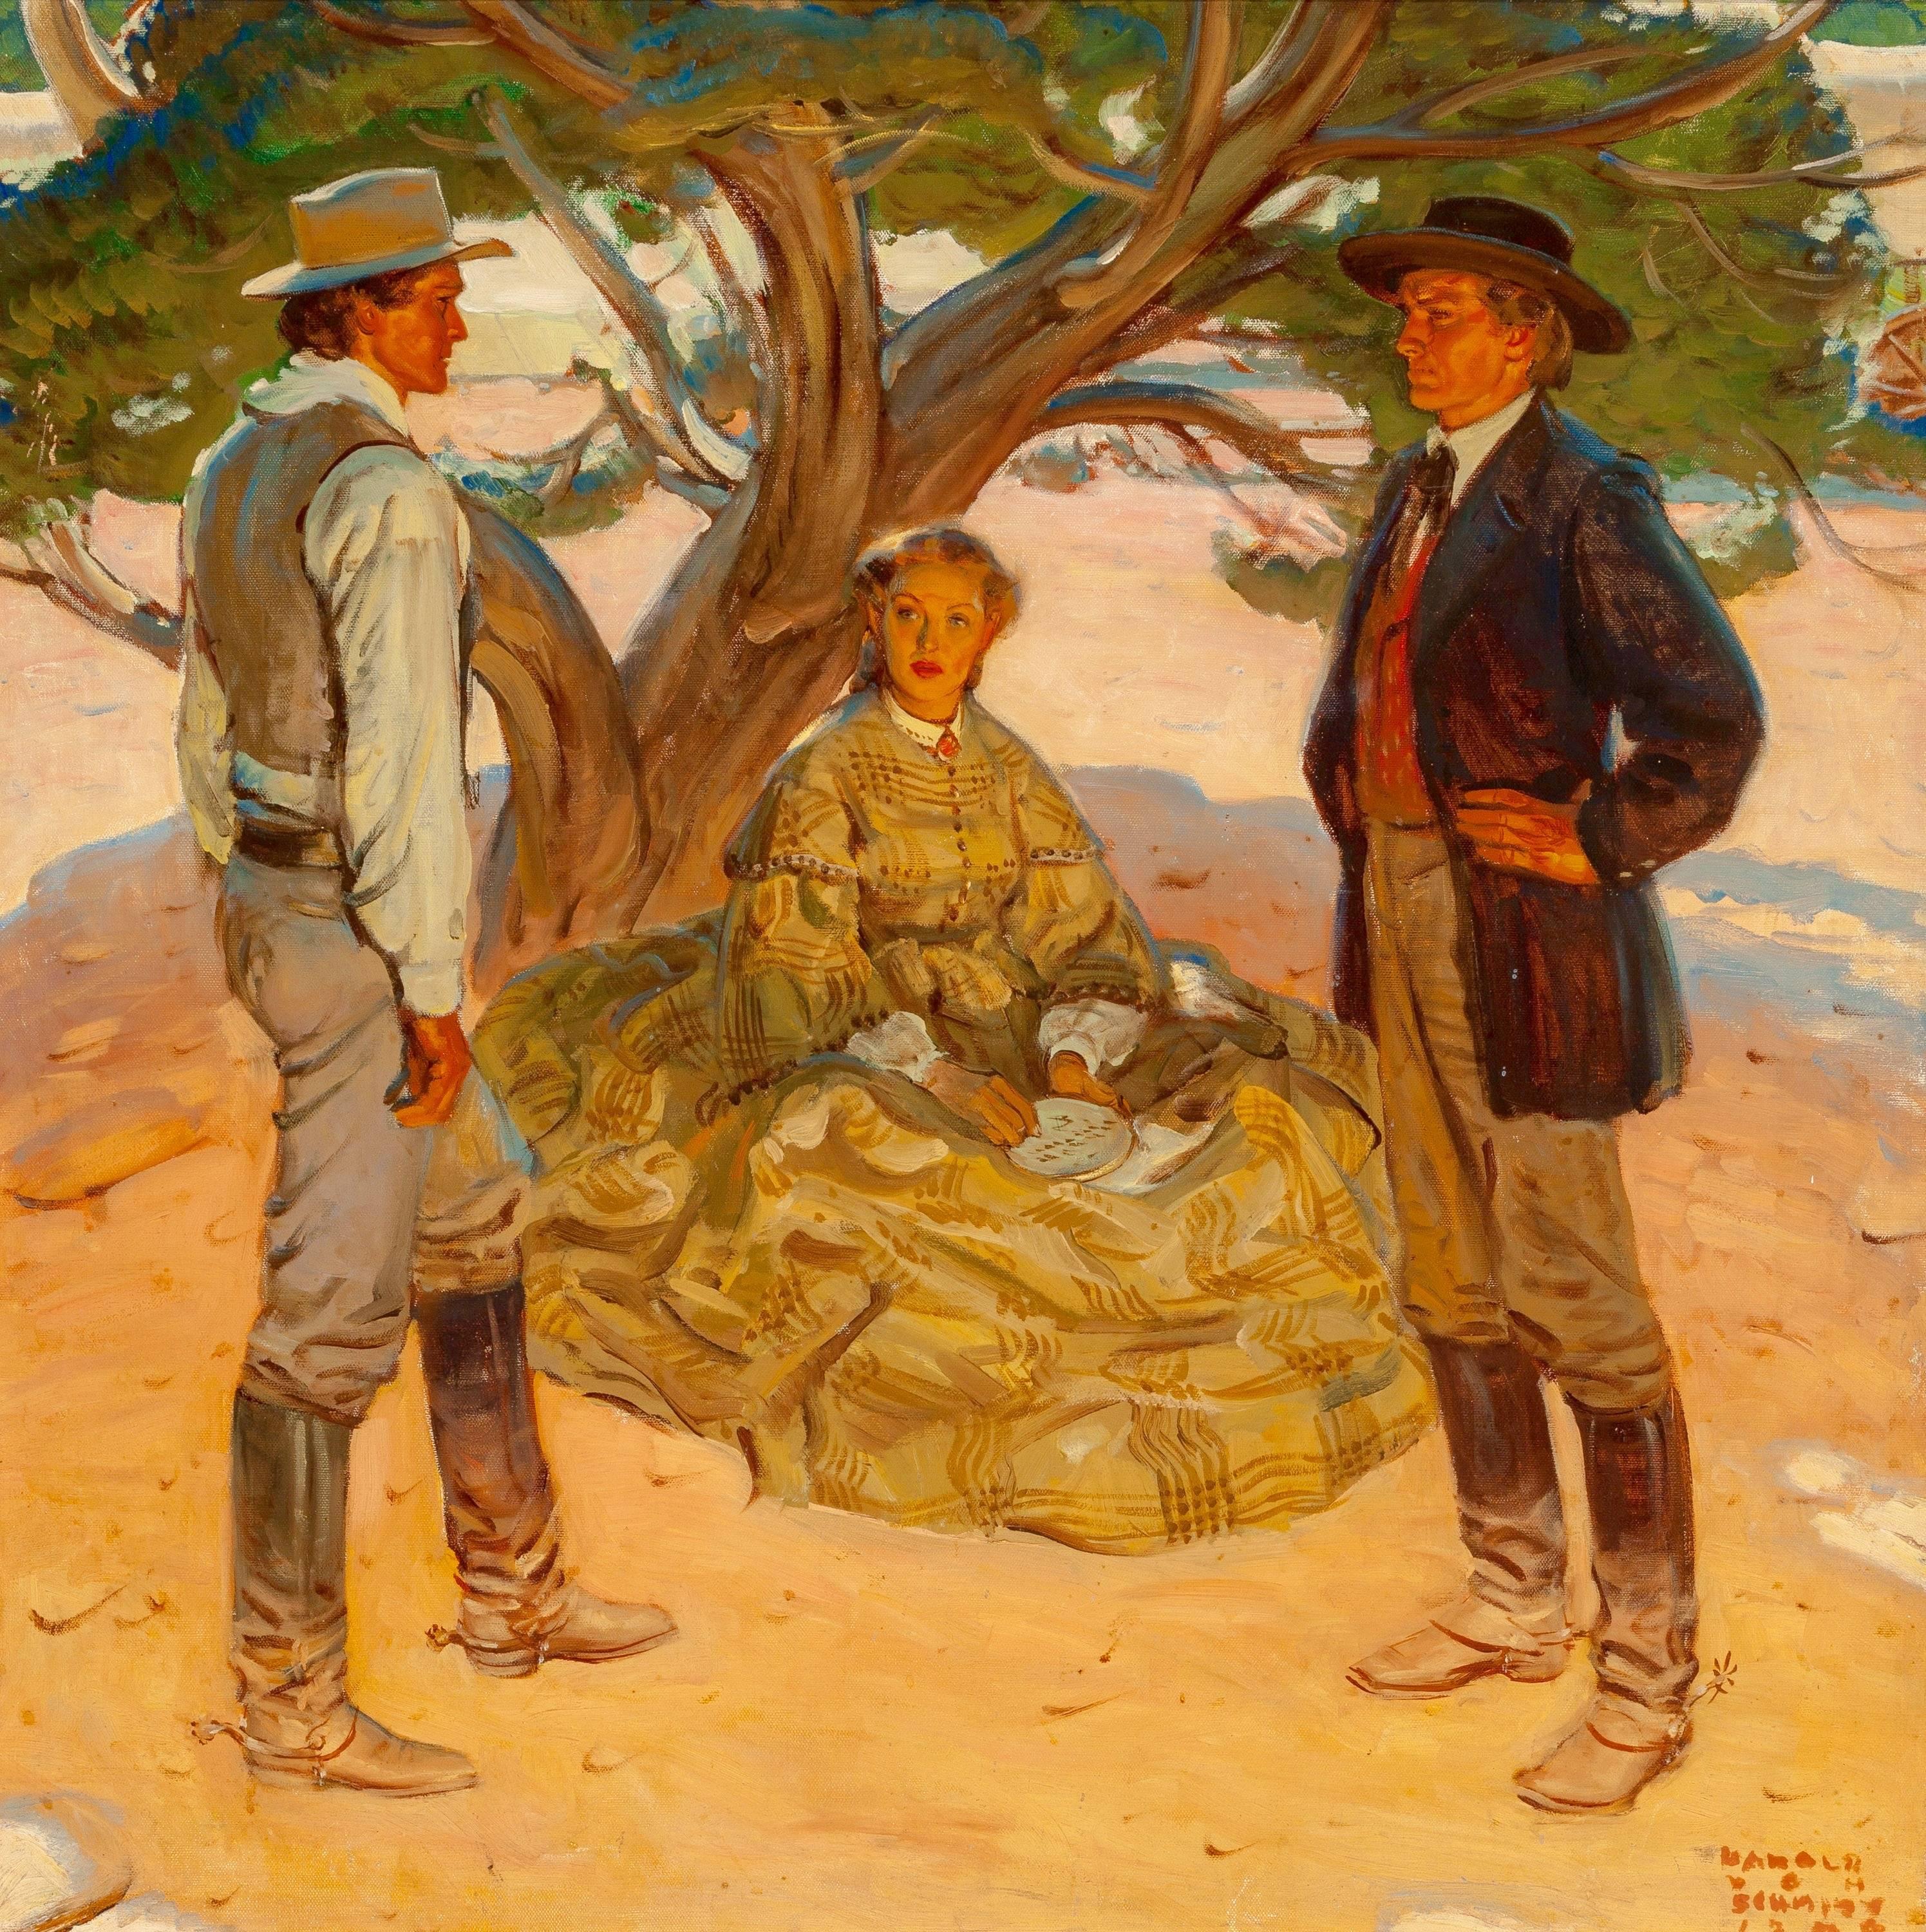 Under the Pine Tree - Painting by Harold von Schmidt